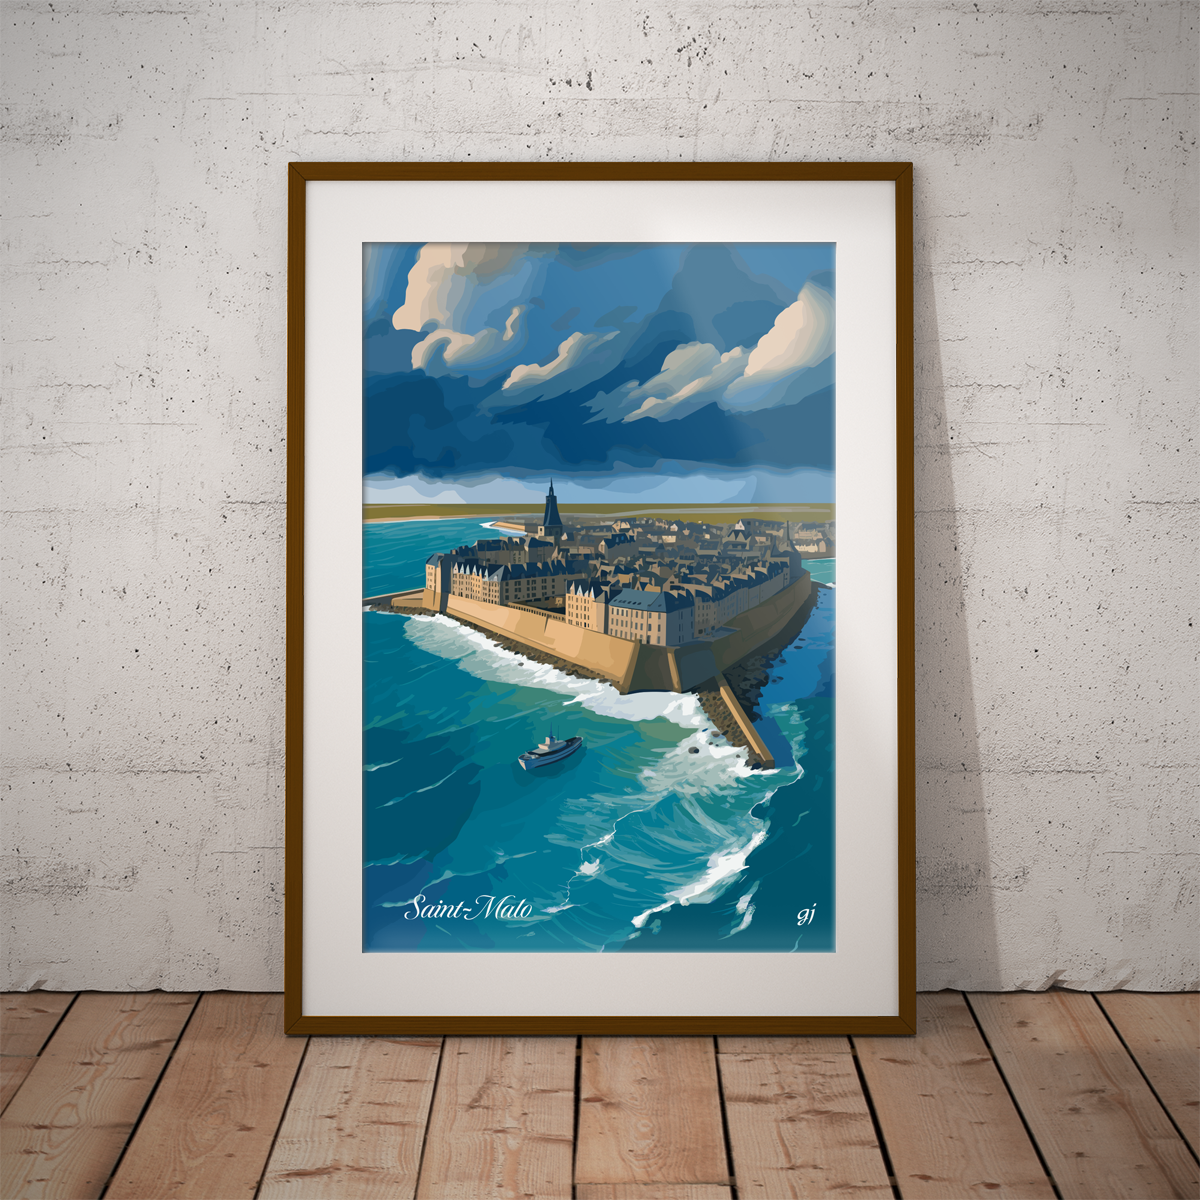 Saint-Malo poster by bon voyage design